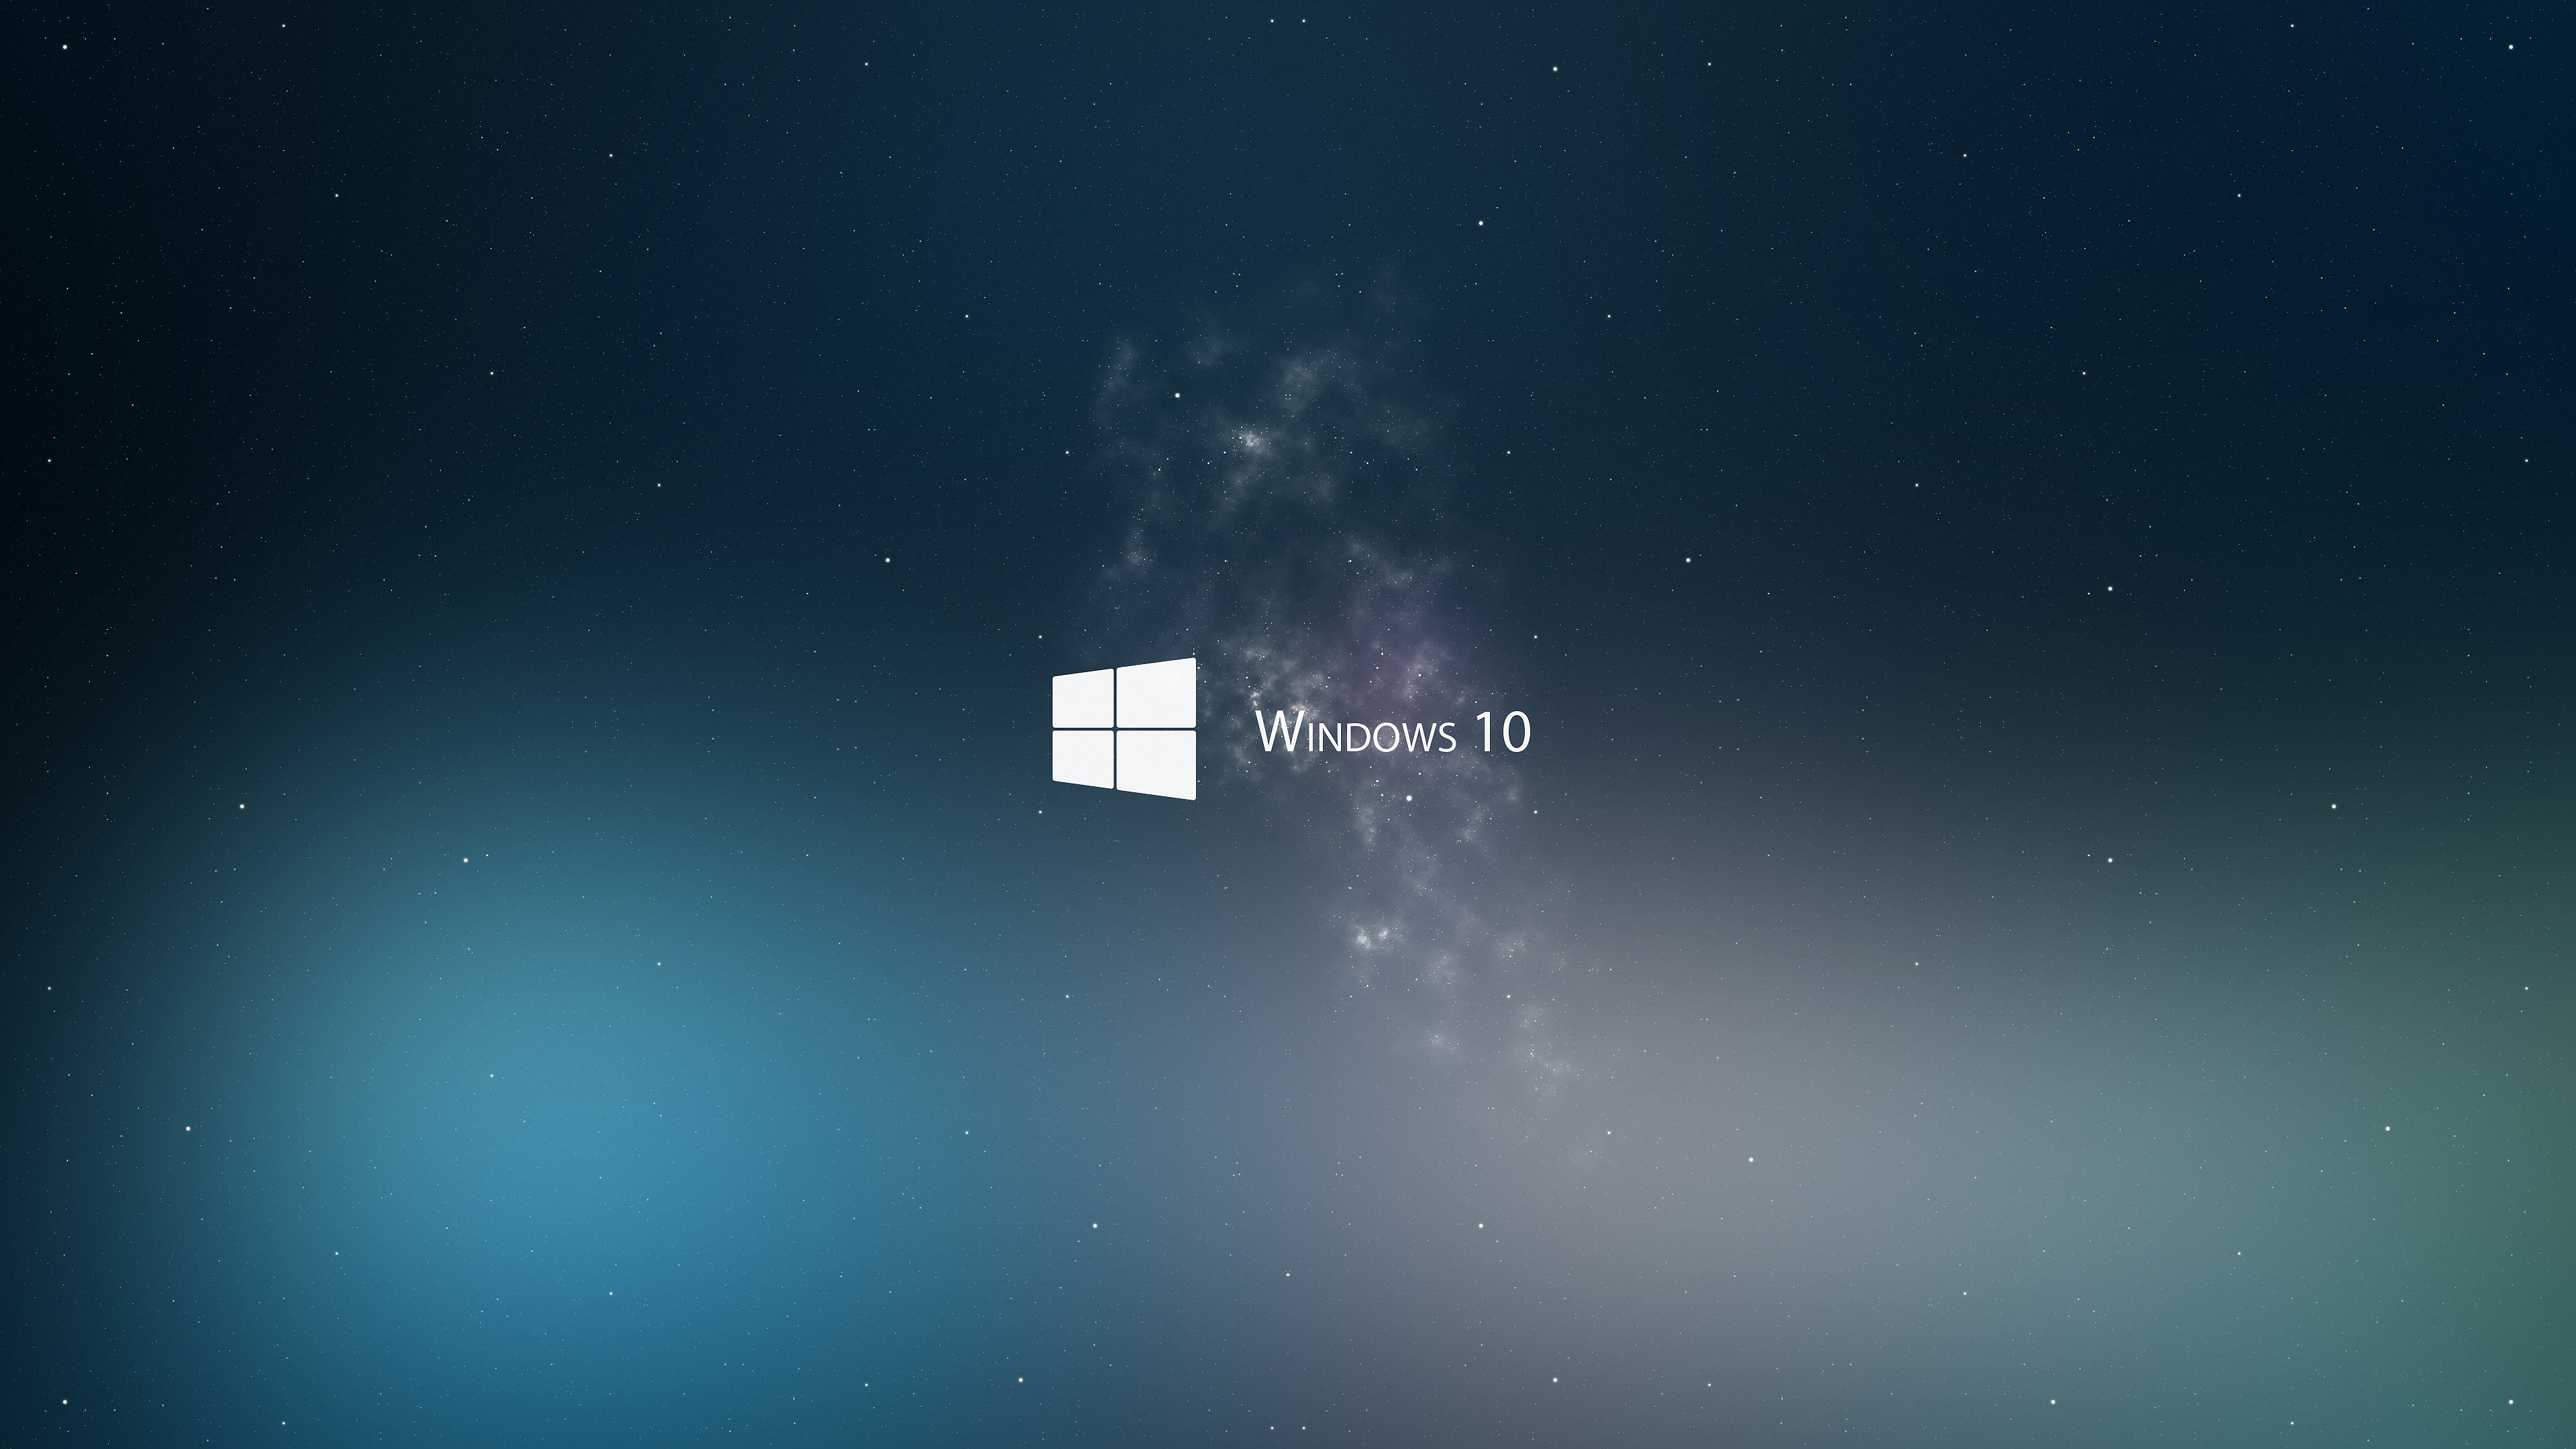 Tìm kiếm hình nền Windows 8.1 với độ phân giải cao giúp tạo nét đẹp cho màn hình máy tính của bạn? Hãy tải chúng miễn phí và tận hưởng sự sống động và sự chi tiết tuyệt đẹp của chúng. Khám phá độ sắc nét và sự rực rỡ của chúng trên màn hình Retina của bạn.